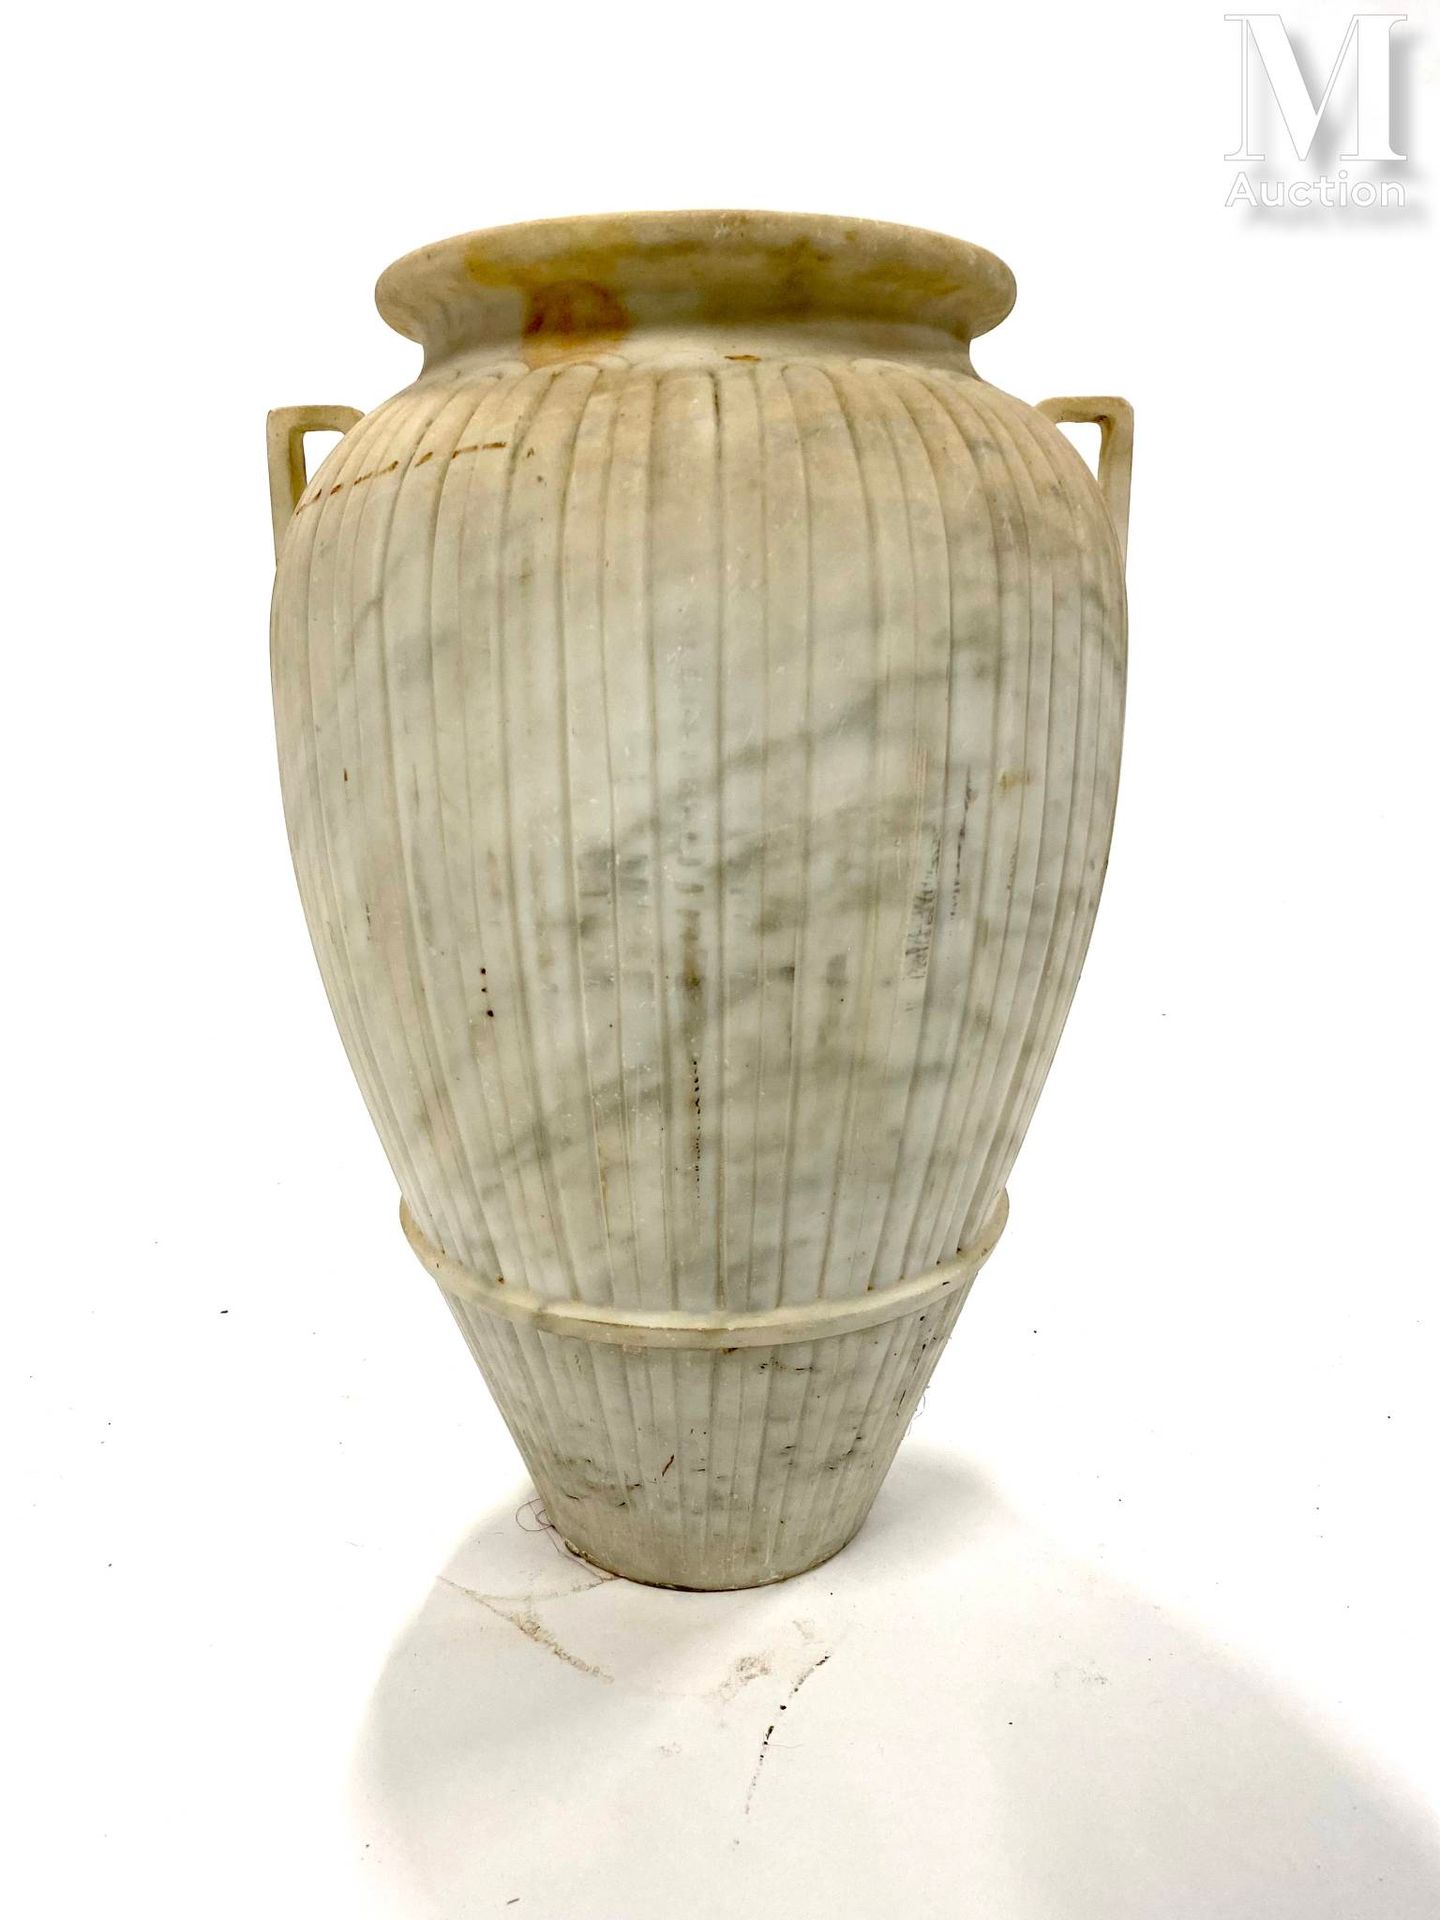 Vase en marbre mit zwei Henkeln, der Schaft mit godroniertem Dekor.
H: 48 cm.